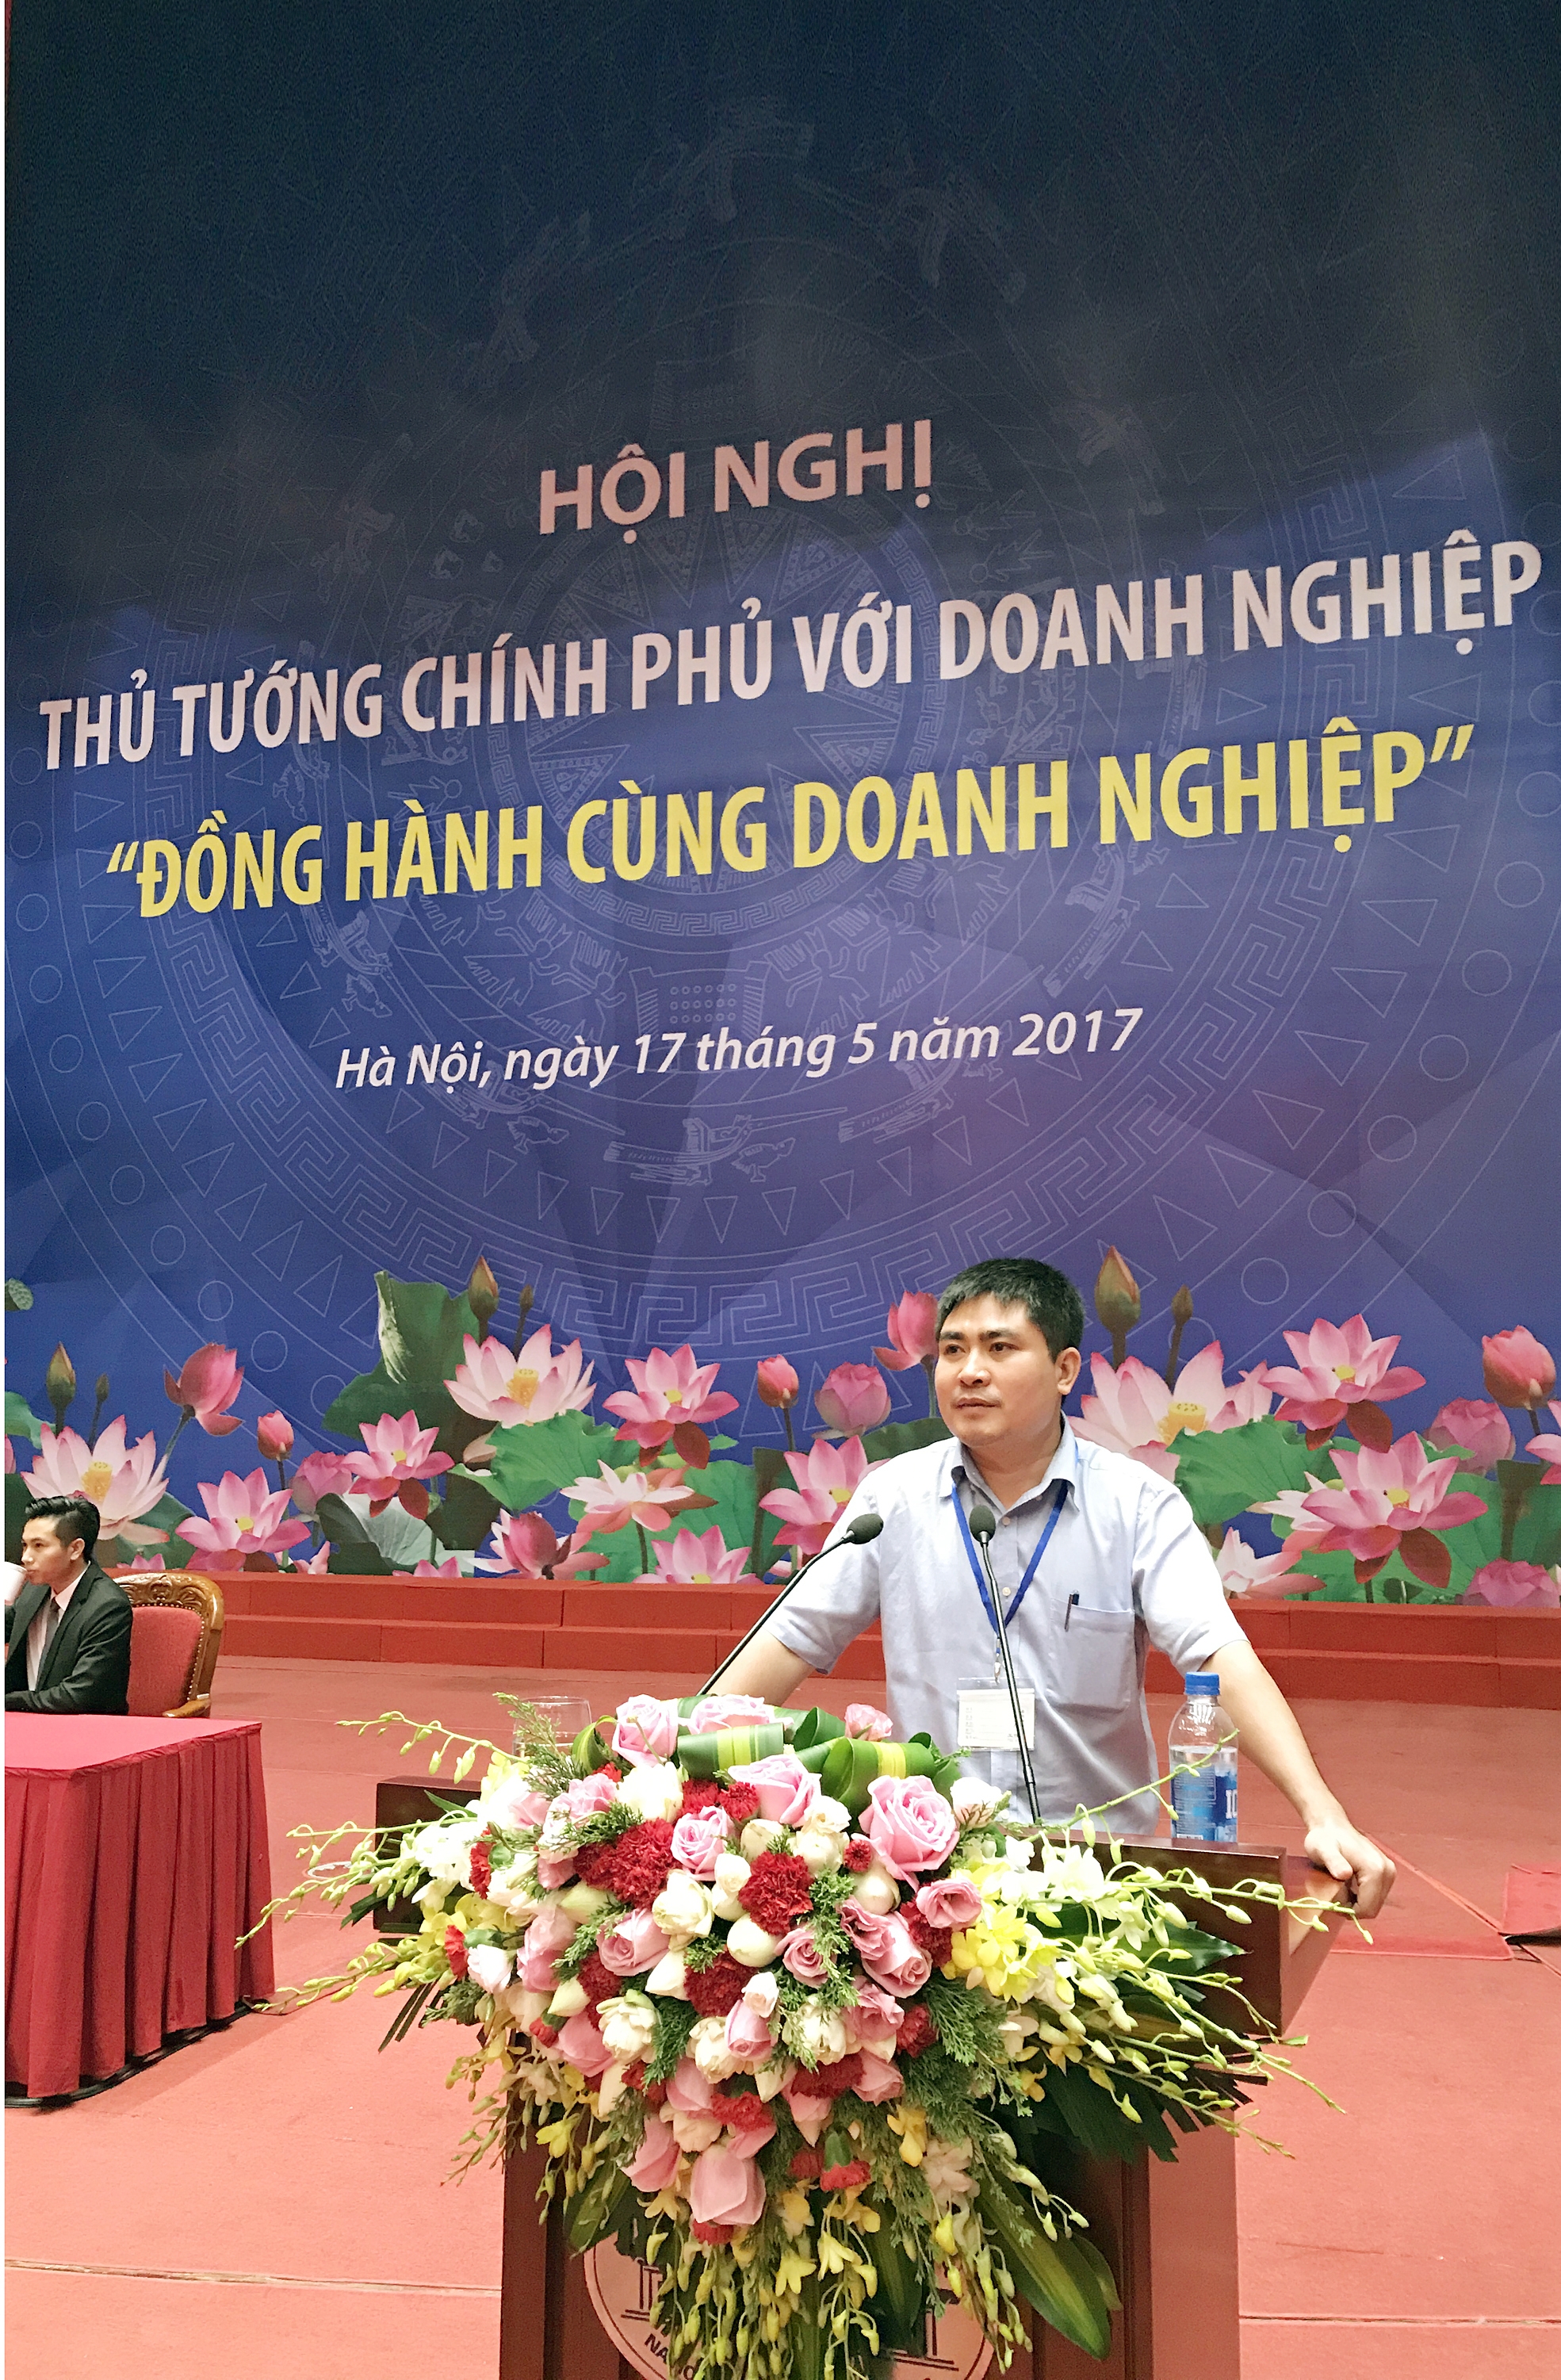 Công ty Hông Phát Tham gia Hội Nghị Thủ Tướng Chính Phủ Với Doanh Nghiệp